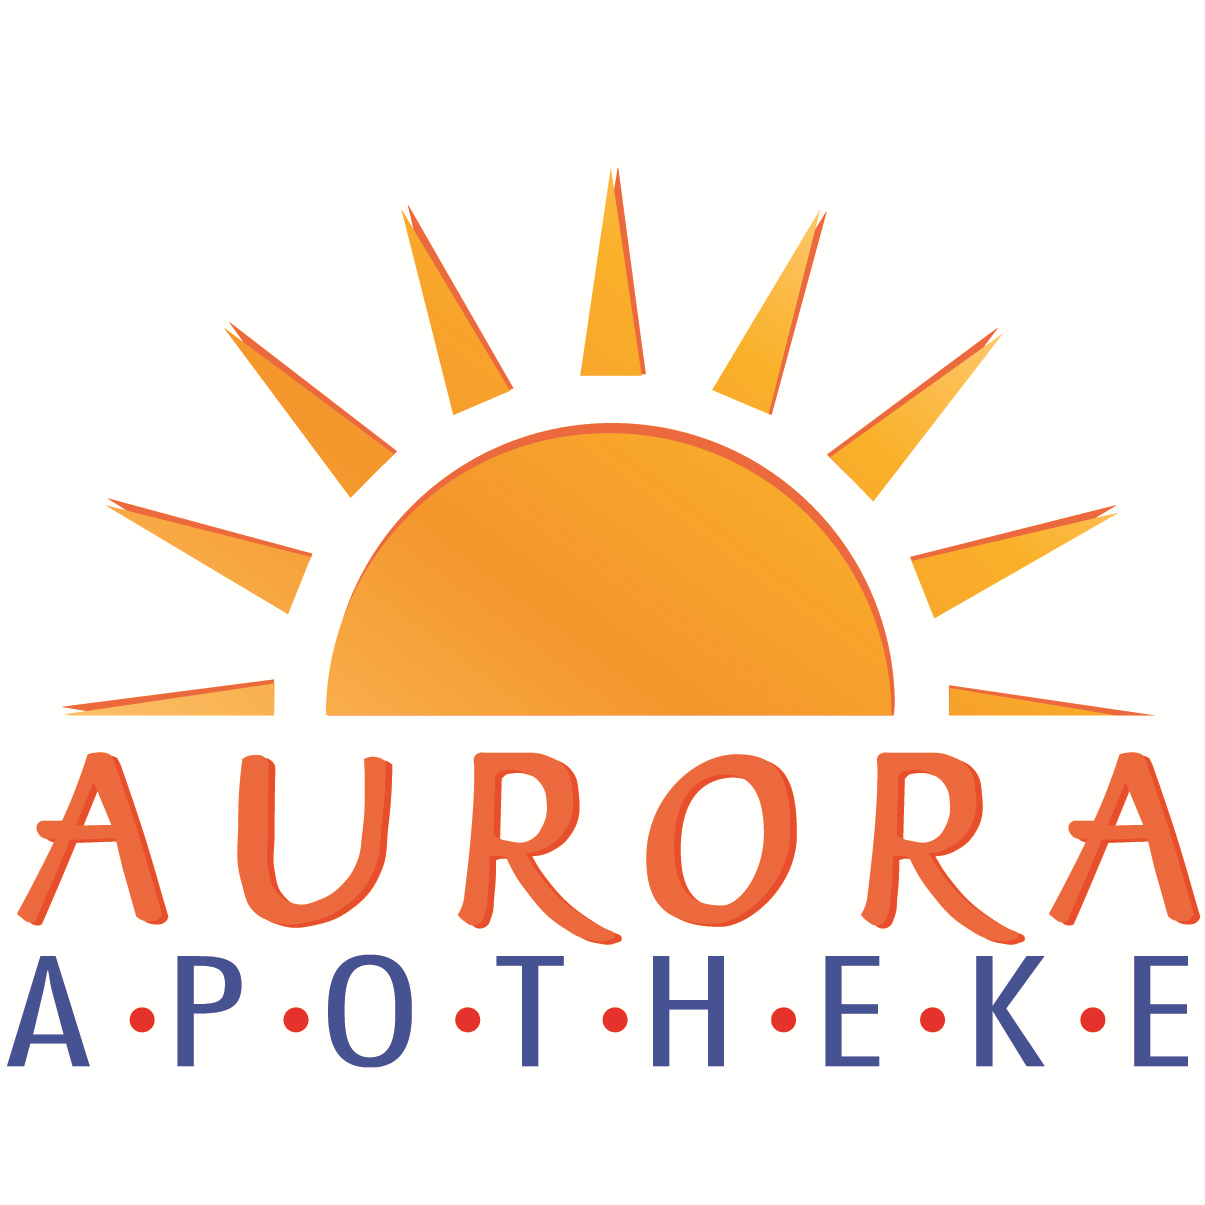 Aurora-Apotheke in München - Logo